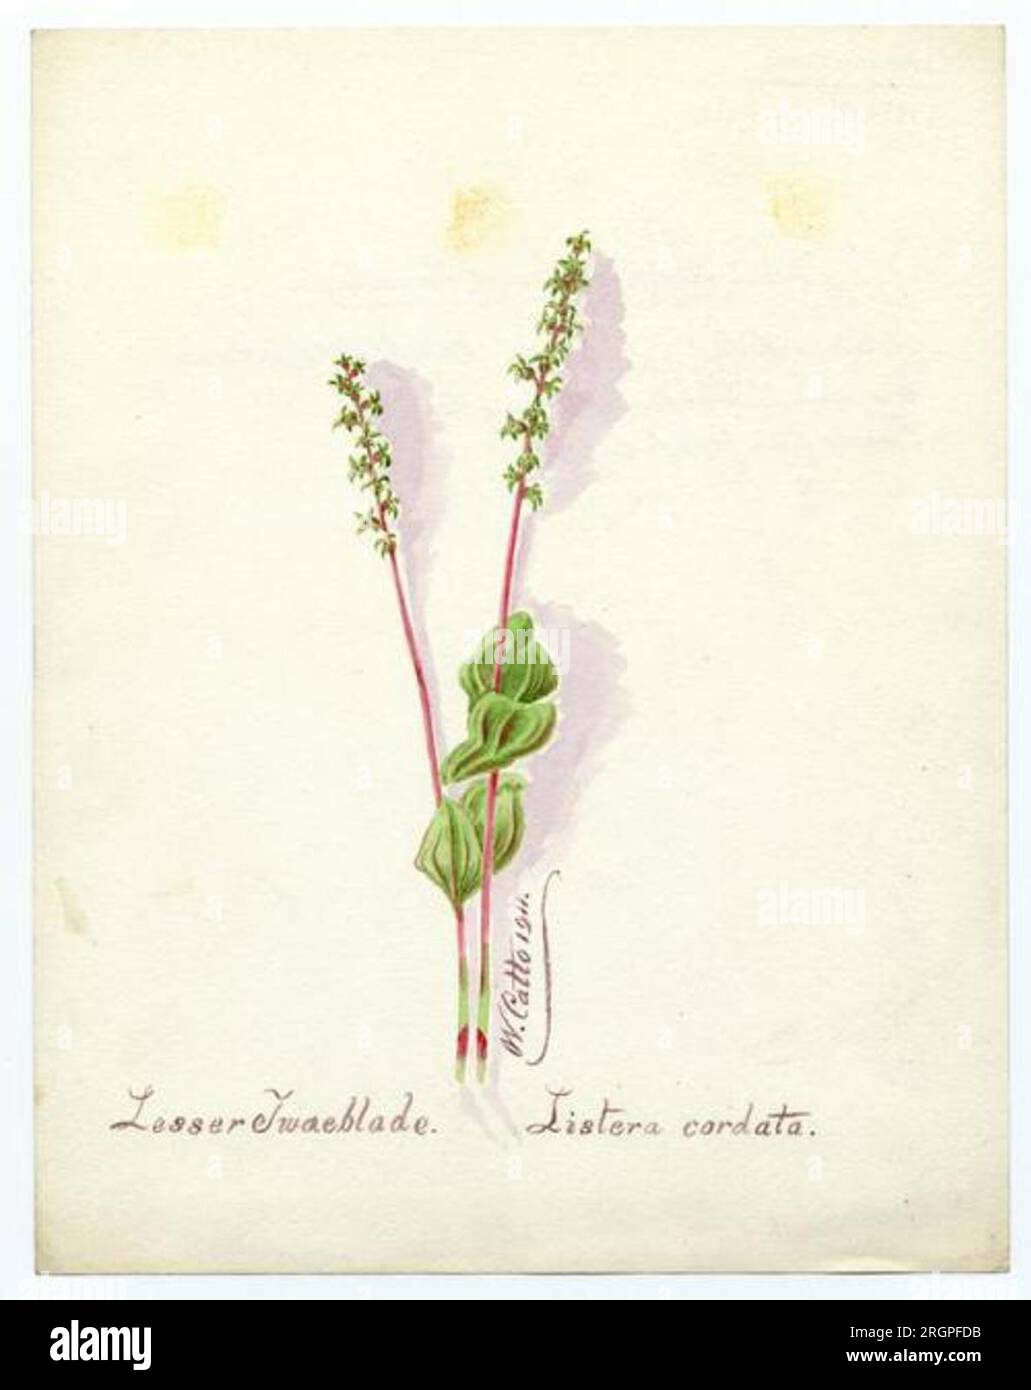 Lesser twaeblade (listera cordata) - William Catto 1911 by William Catto Stock Photo